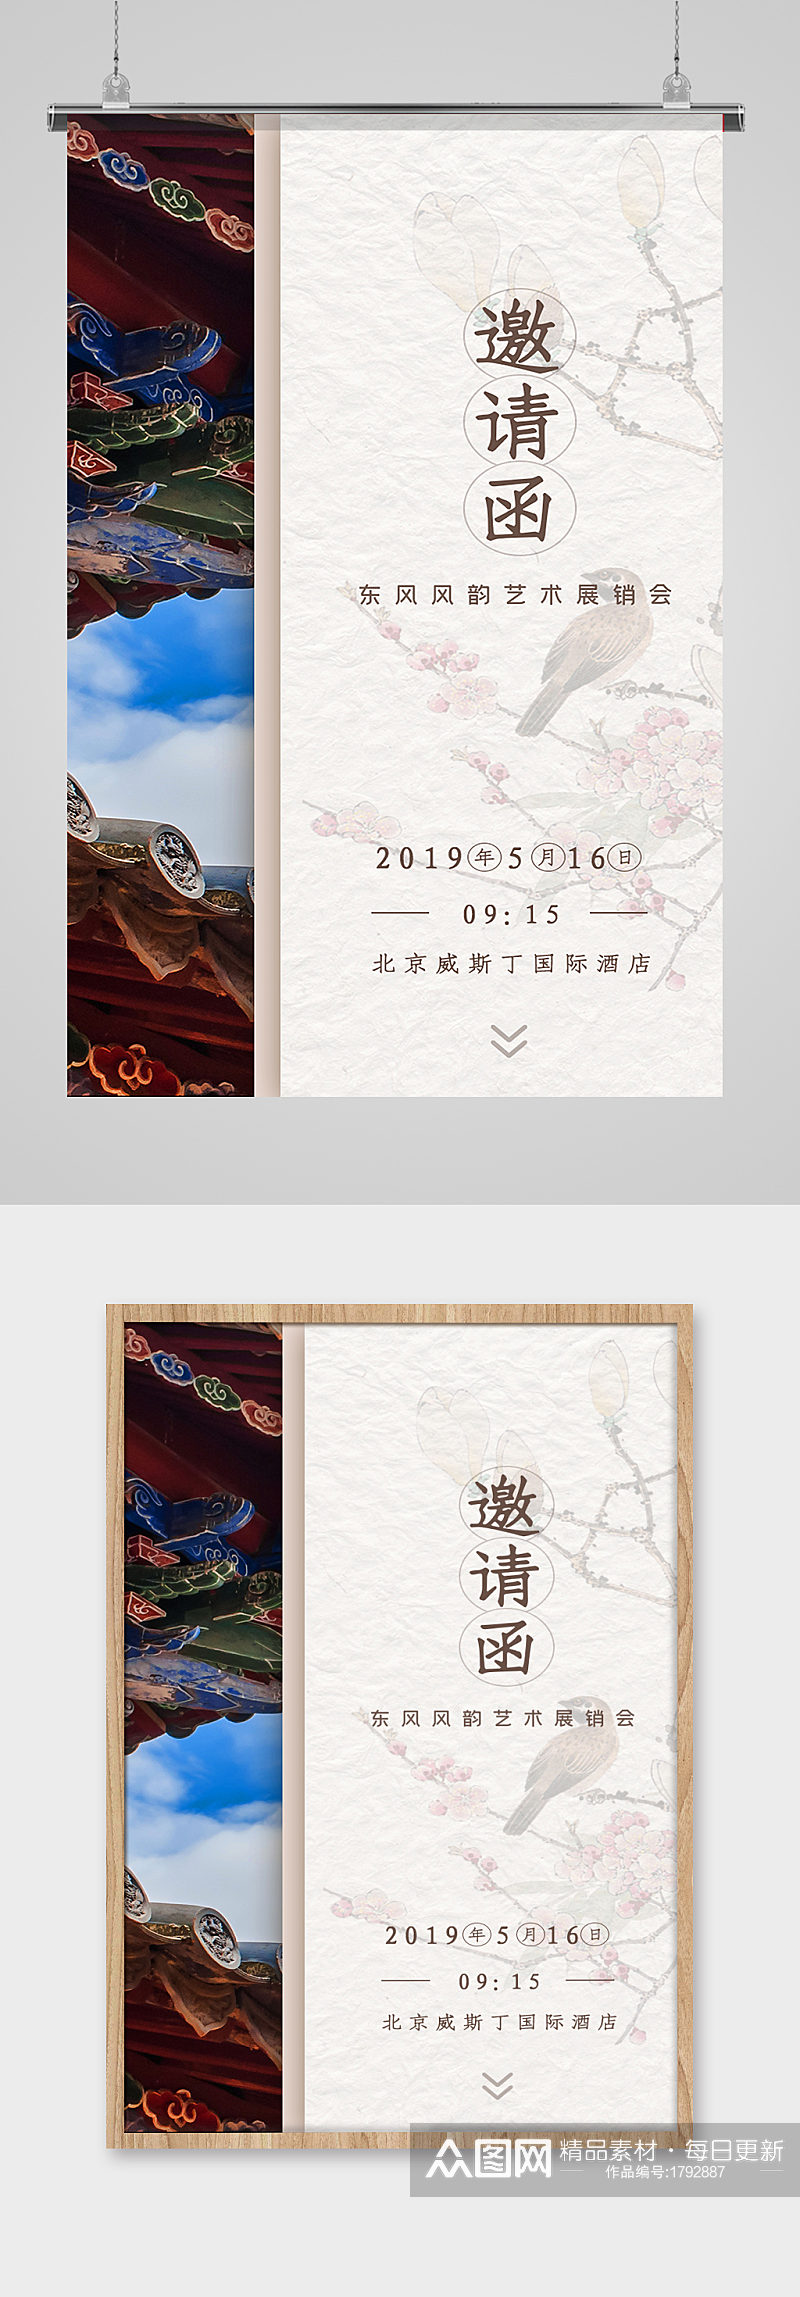 水墨中国风古风手机邀请函海报设计素材